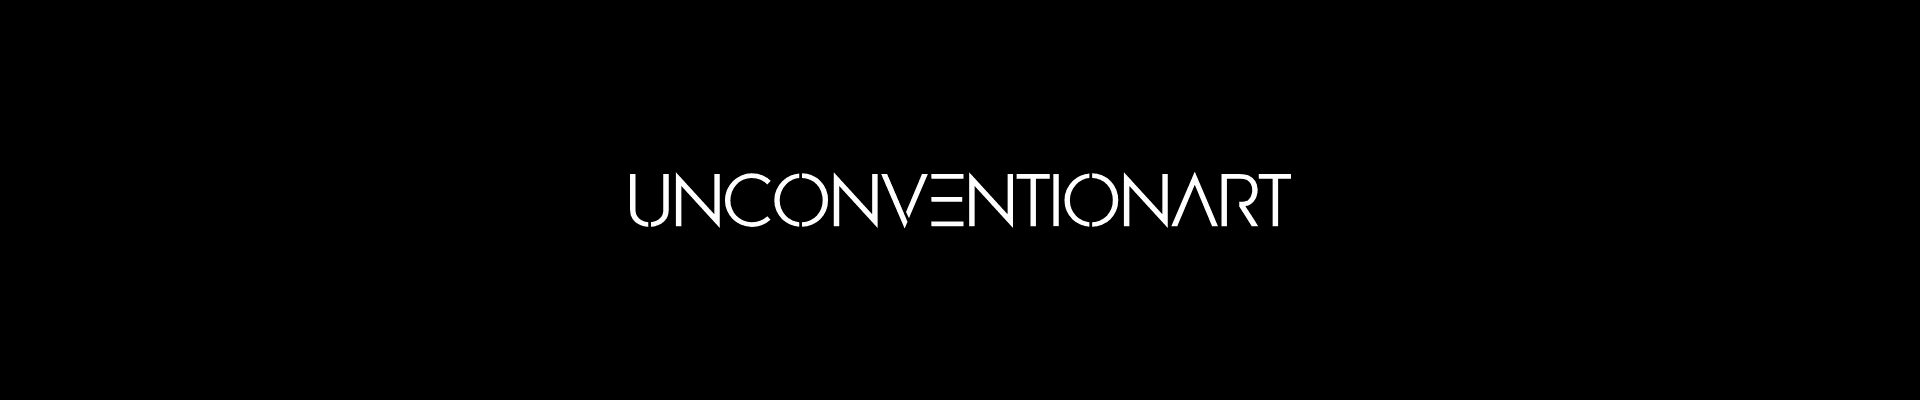 UnconventionArt banner